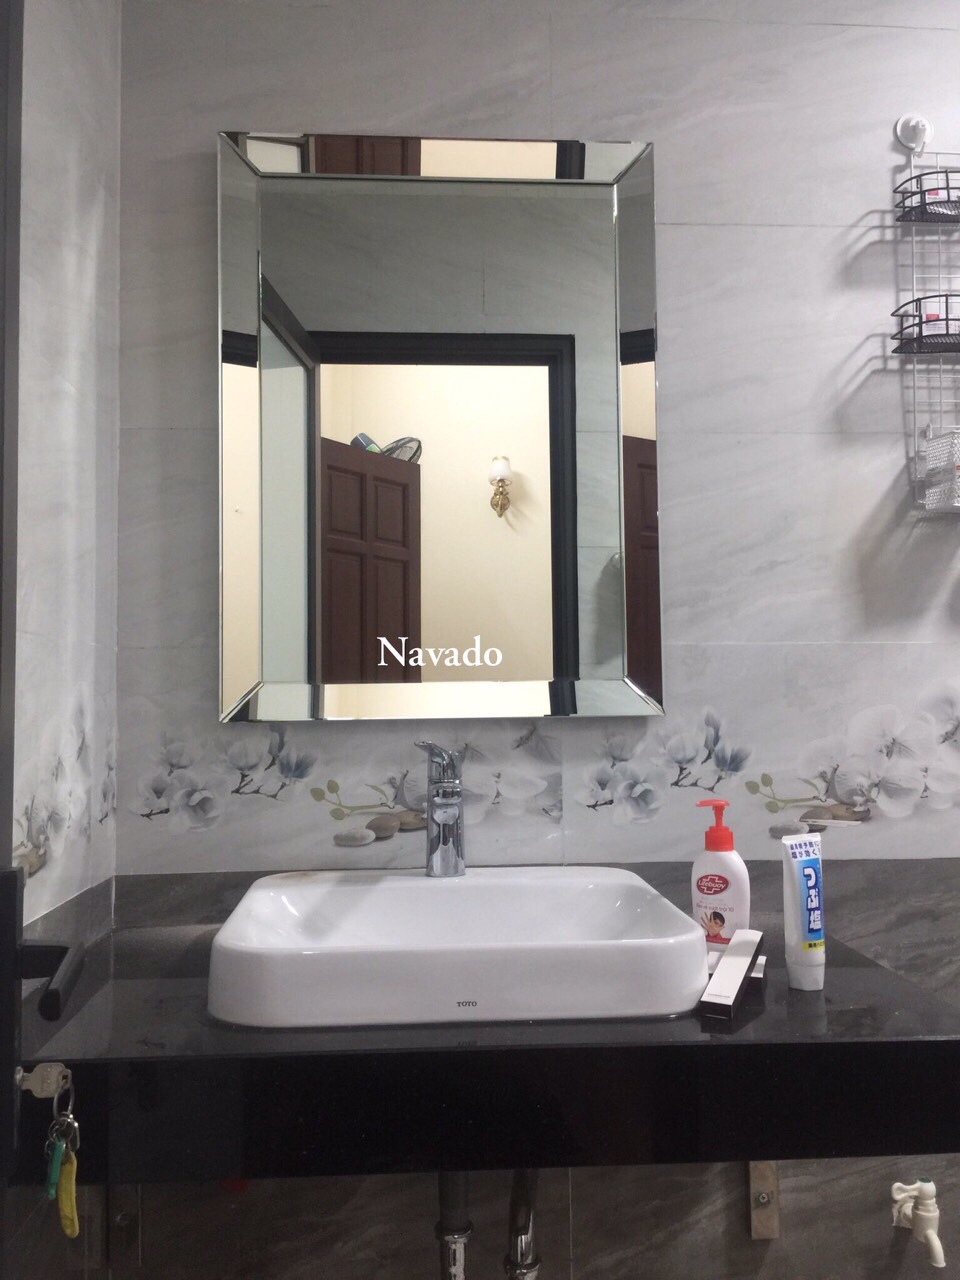 Gương phòng tắm cao cấp Branco: Chất lượng tốt là thông điệp được chú trọng đến khi sử dụng gương phòng tắm cao cấp Branco. Sản phẩm này được thiết kế để tôn lên vẻ đẹp sang trọng của phòng tắm, với chất lượng vượt trội và kết cấu cực kỳ chắc chắn.